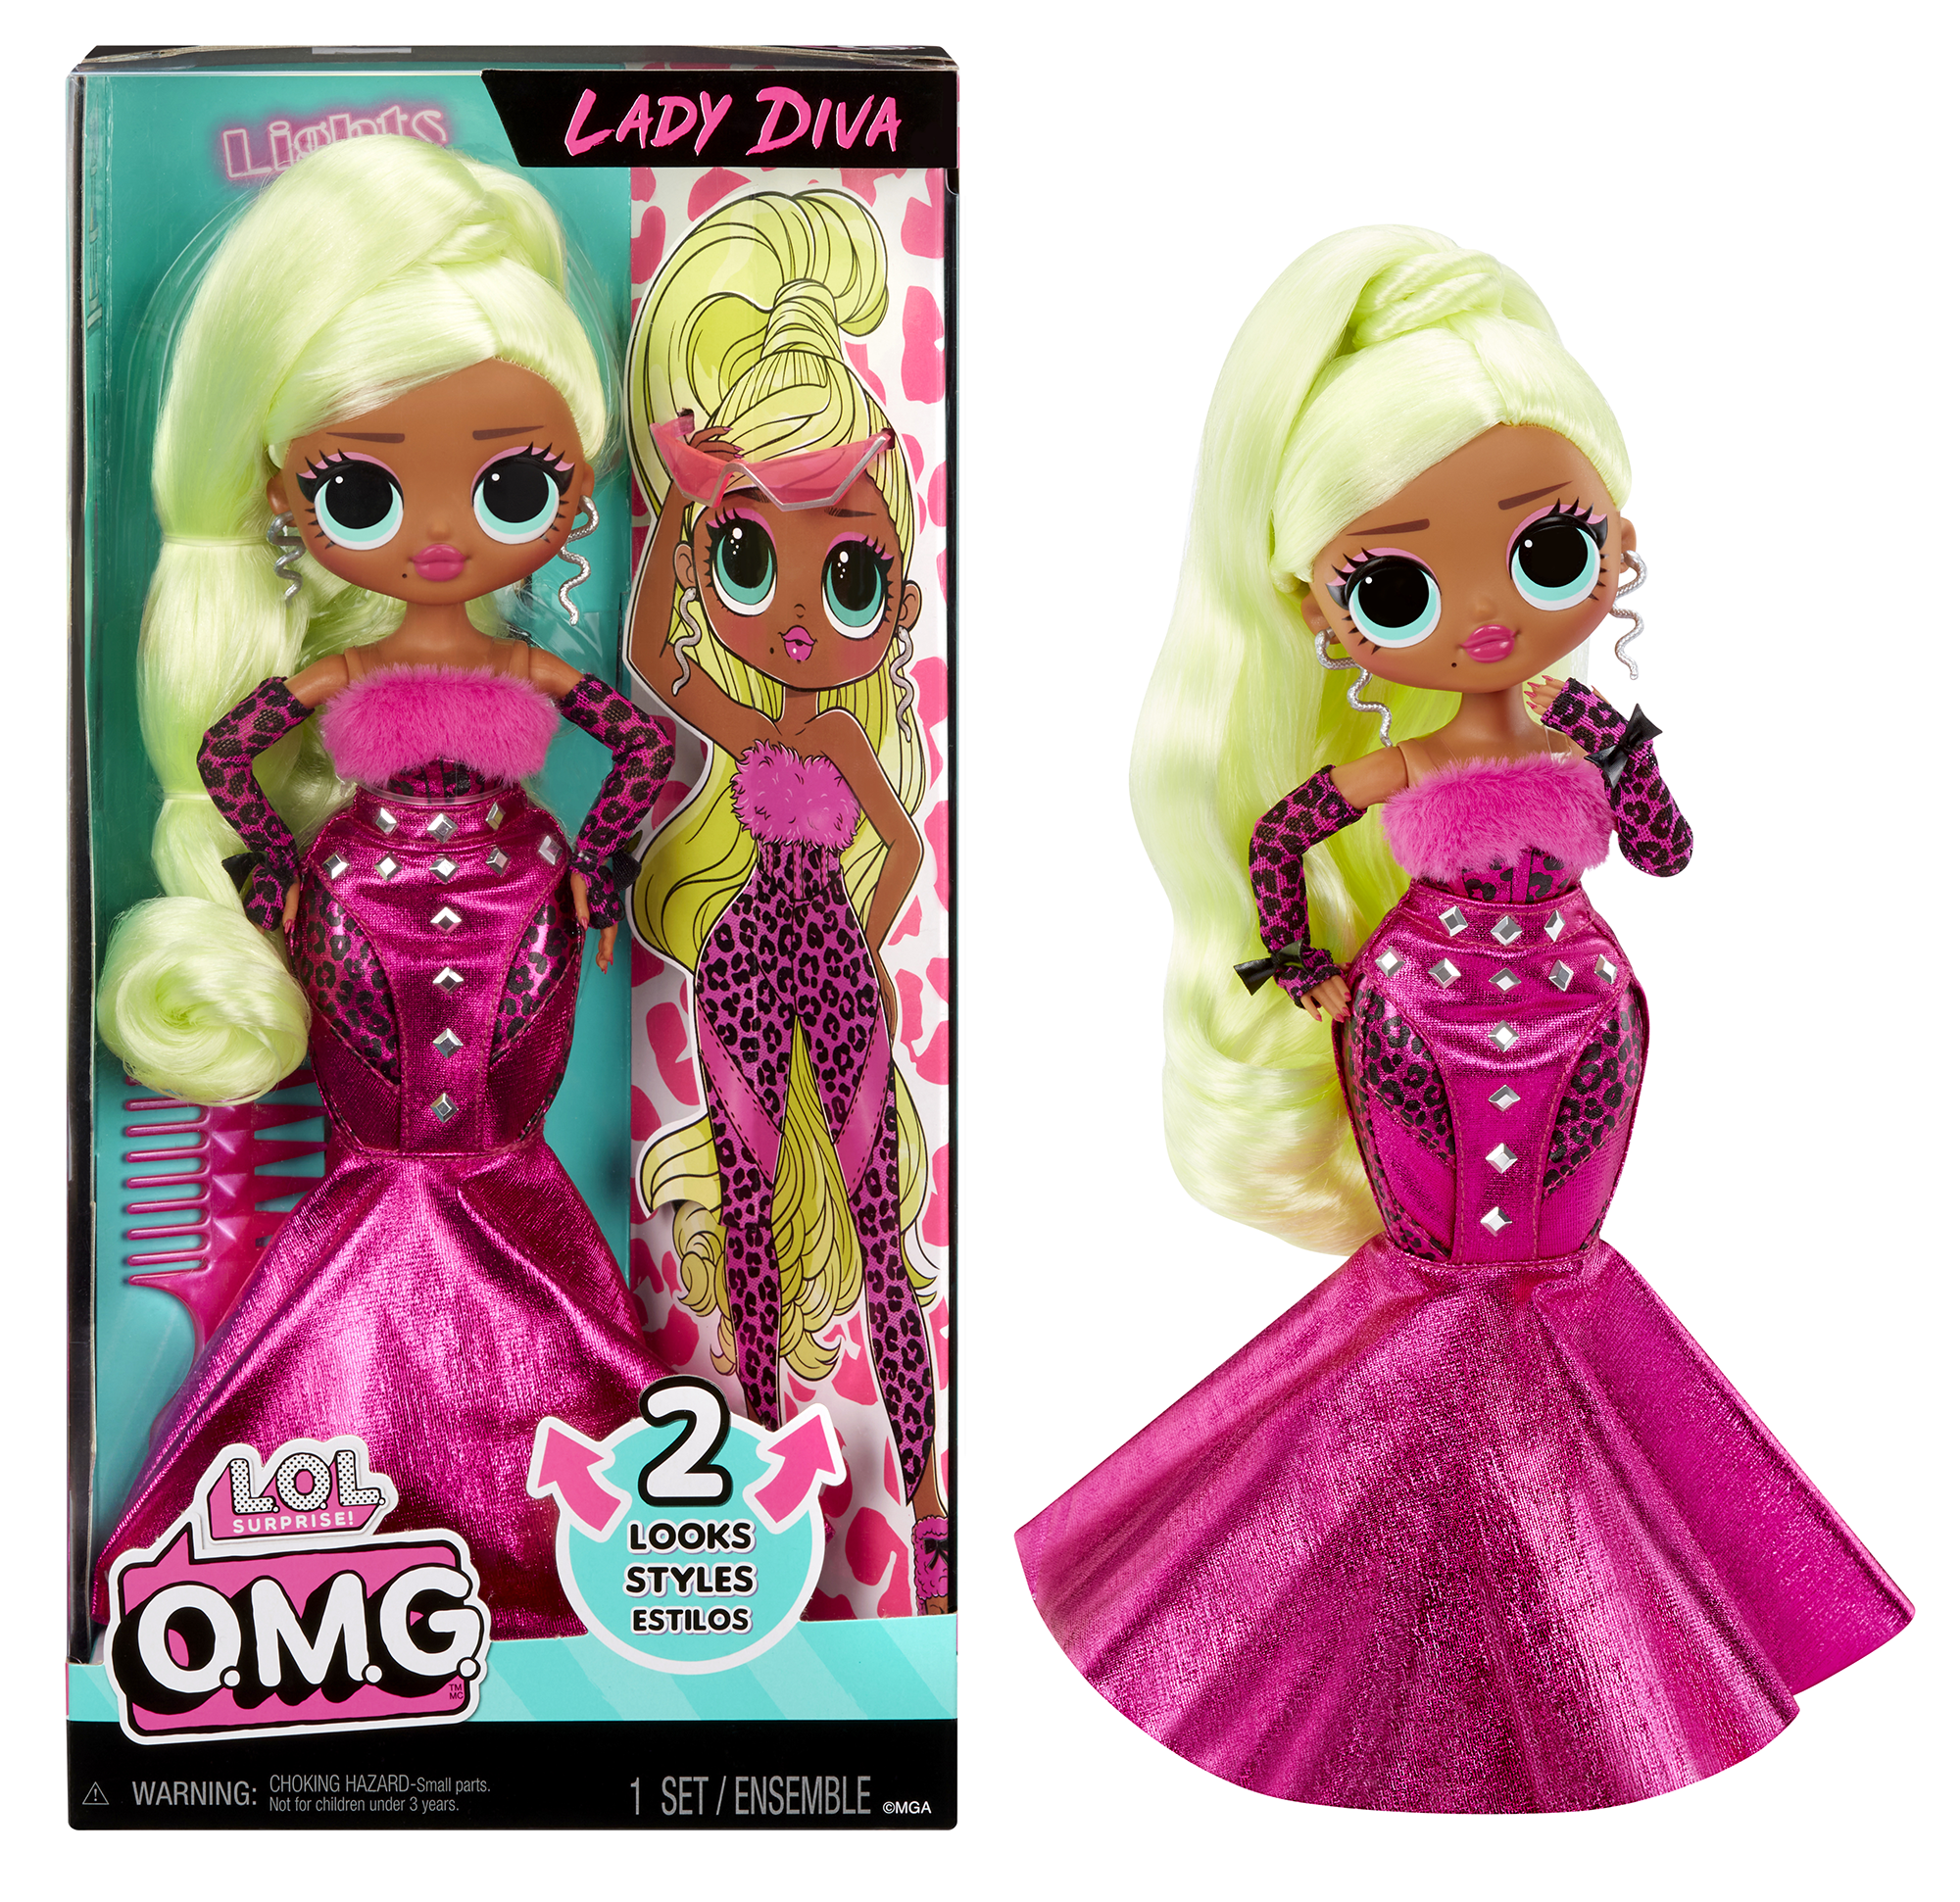 Lol surprise bambola alla moda omg - lady diva - con molteplici sorprese, tra cui abiti trasformabili e favolosi accessori - LOL